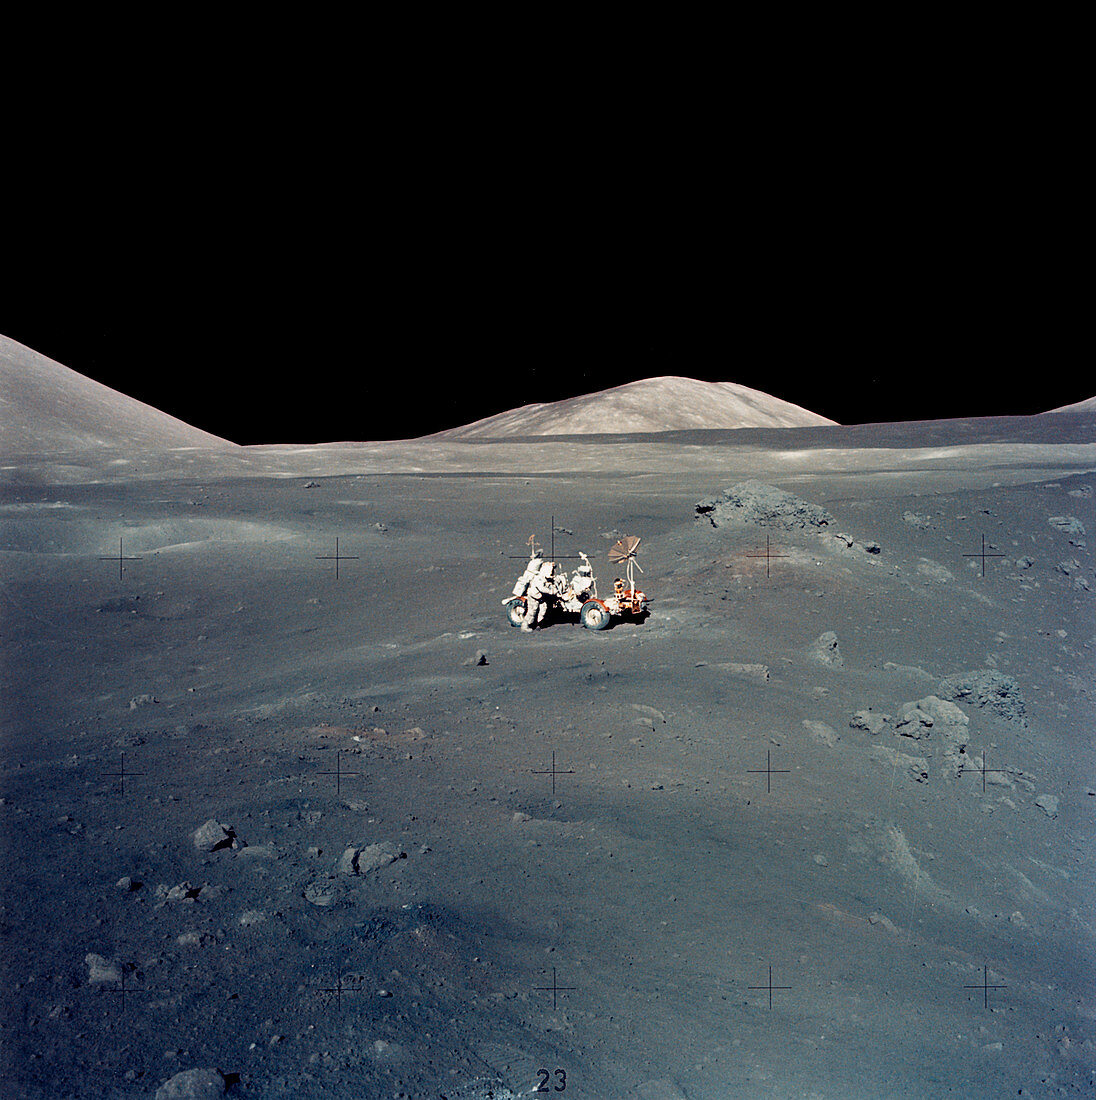 Apollo 17 astronauts